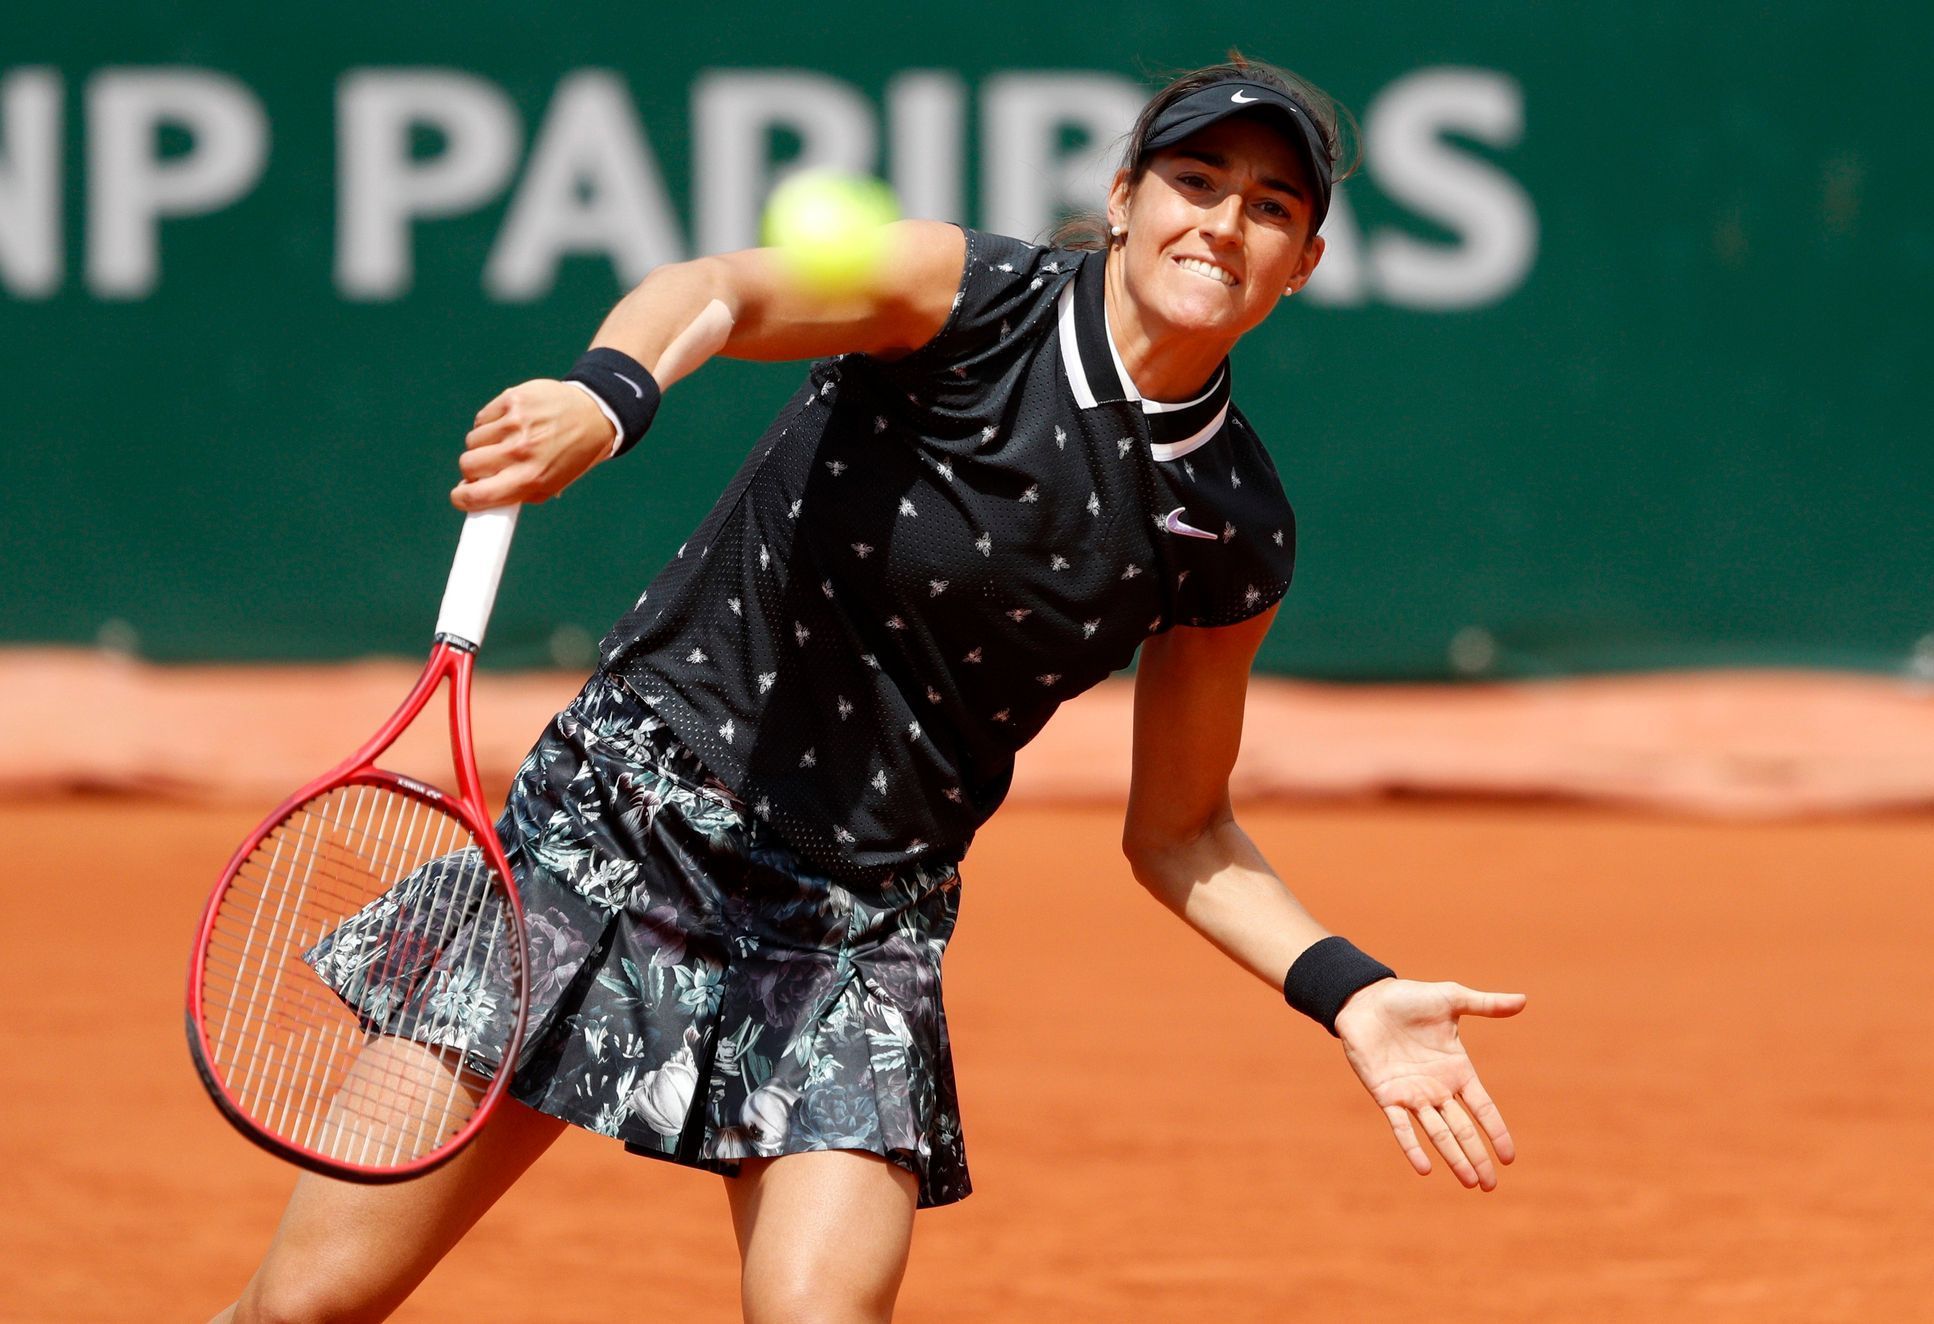 Móda na French Open 2019 (Caroline Garciaová)